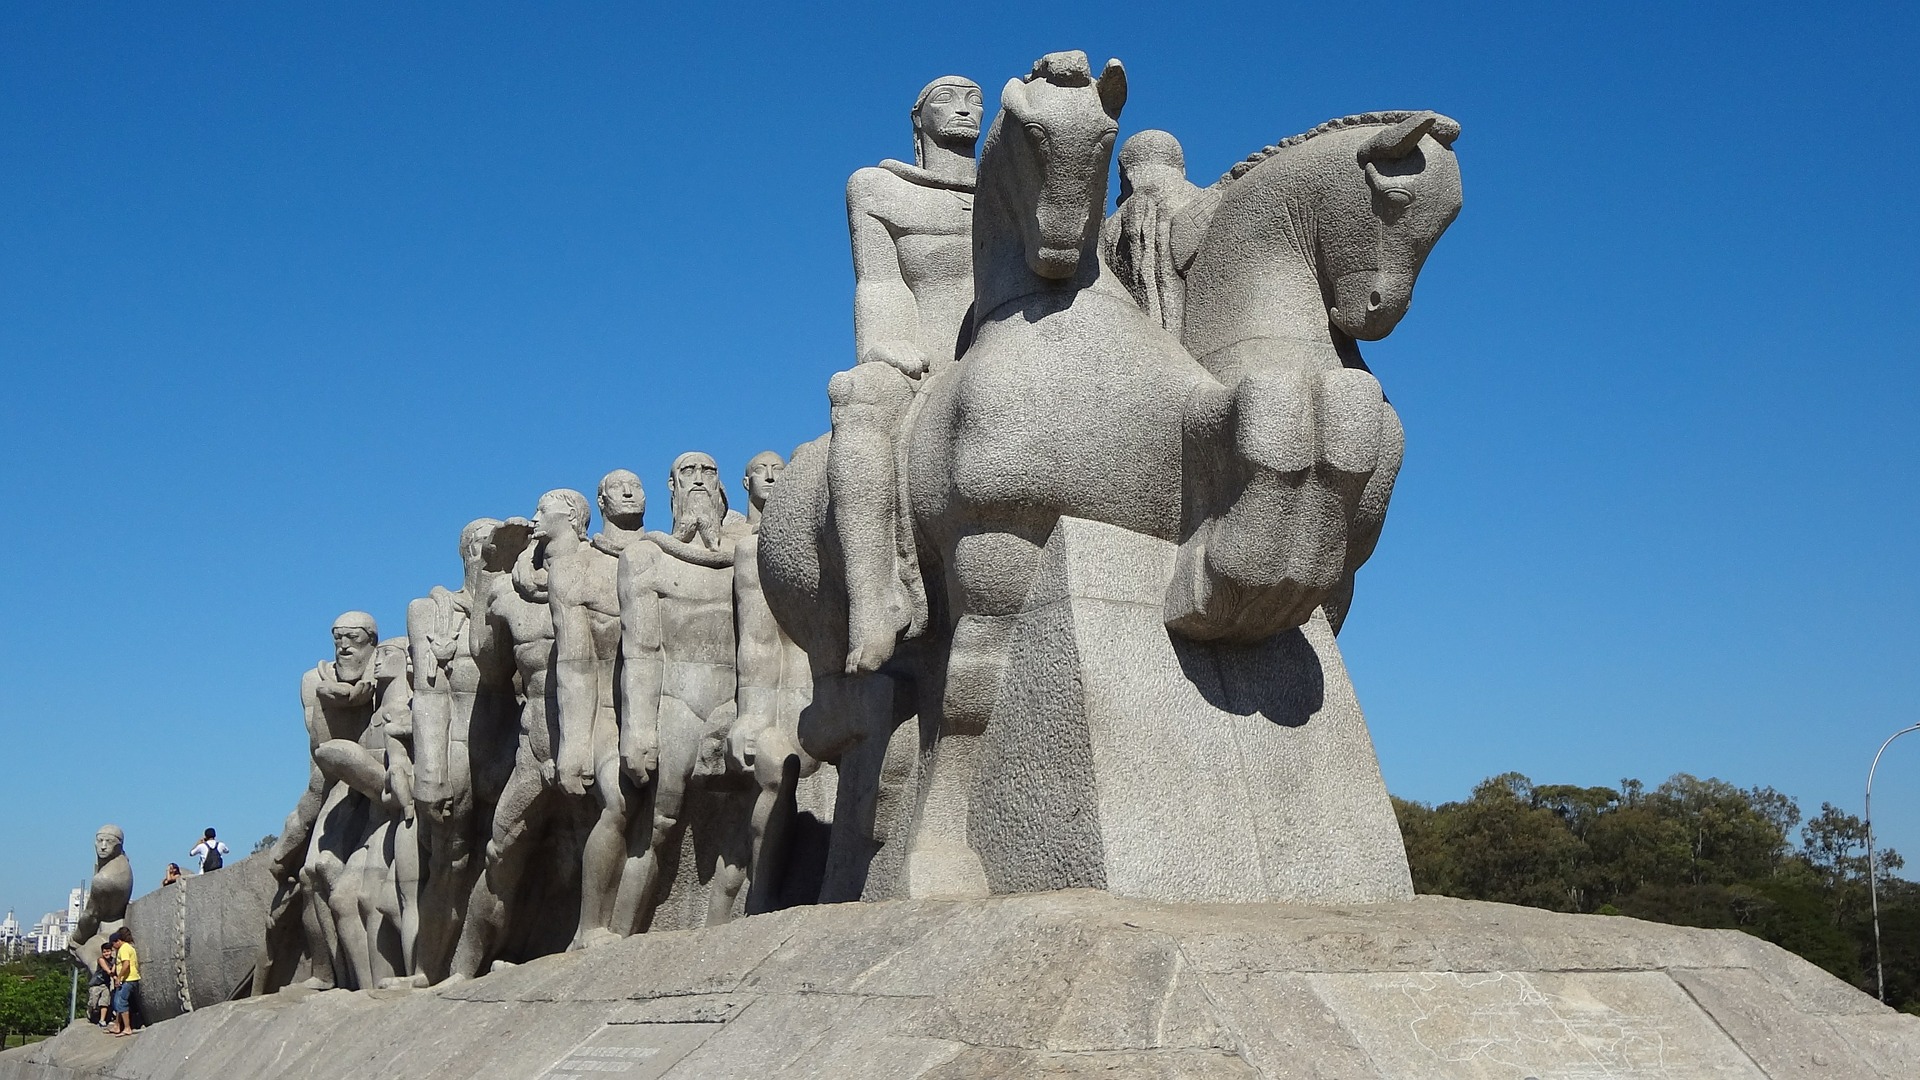 Na imagem, vemos uma foto do Monumento às Bandeiras, uma enorme esculturas com vários homens montados em cavalos.